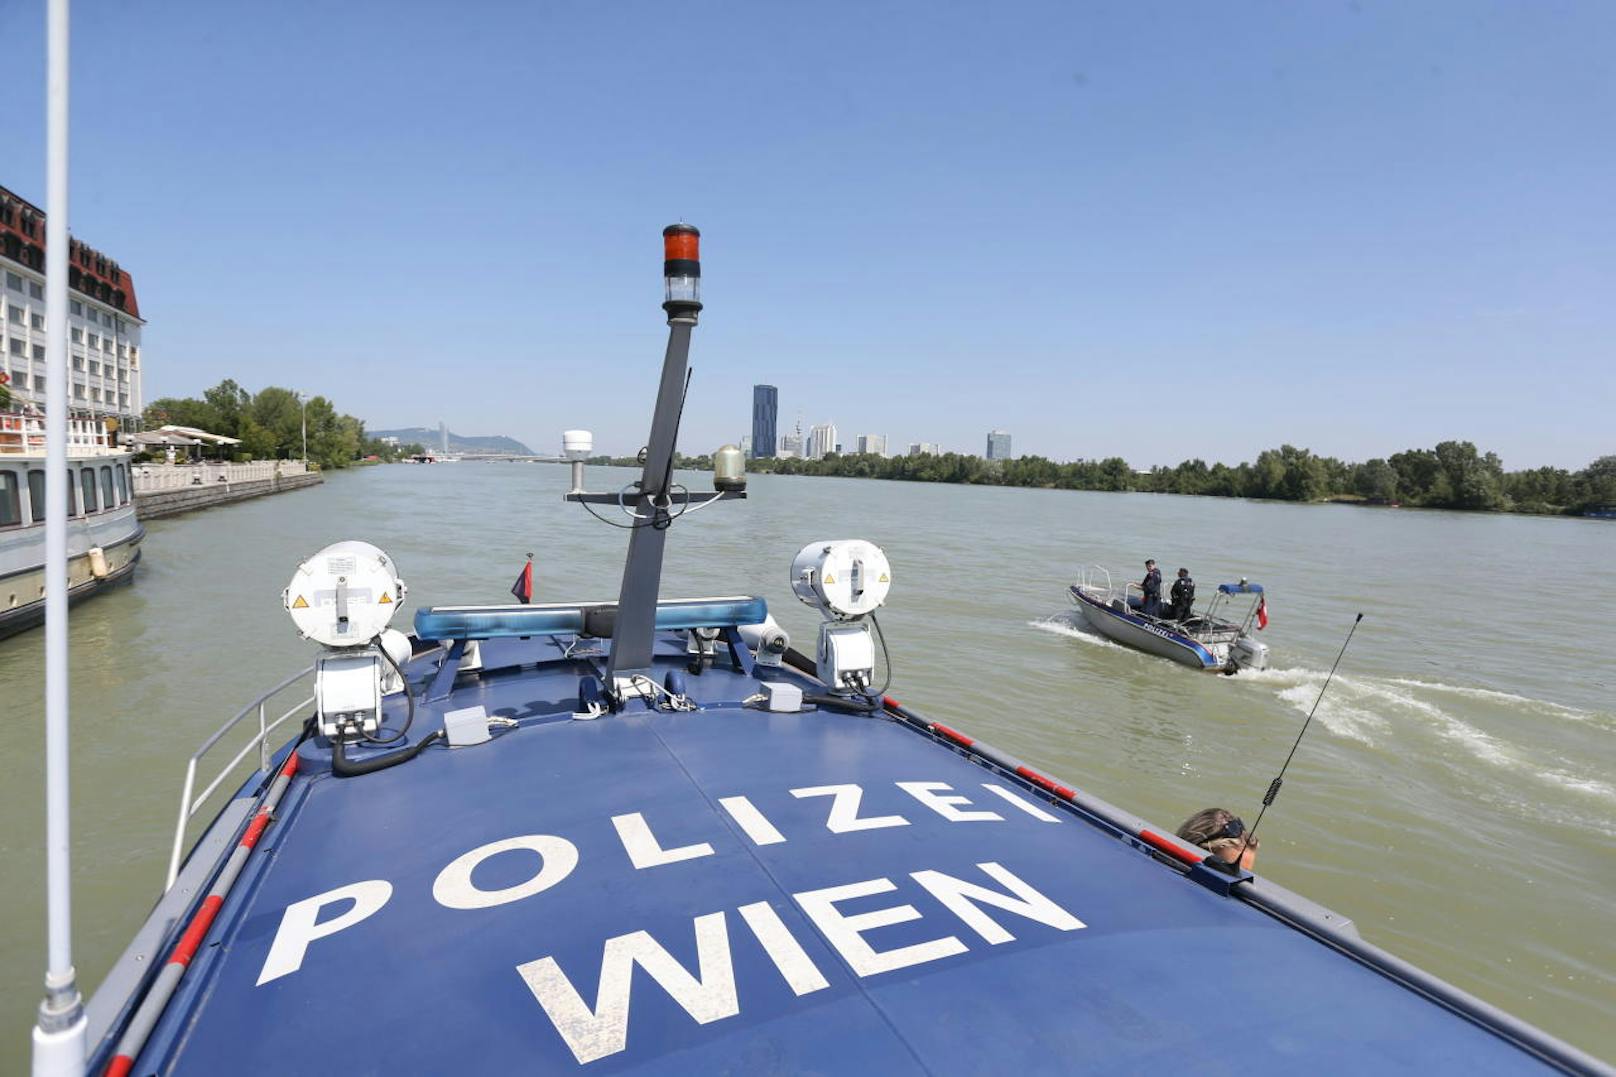 Beim Inselfest am Wochenende werden die 46 Beamten der Wiener Wasserpolizei wieder alle Hände voll zu tun haben. "Heute" schaute bei den "Seepferdchen" vorbei.